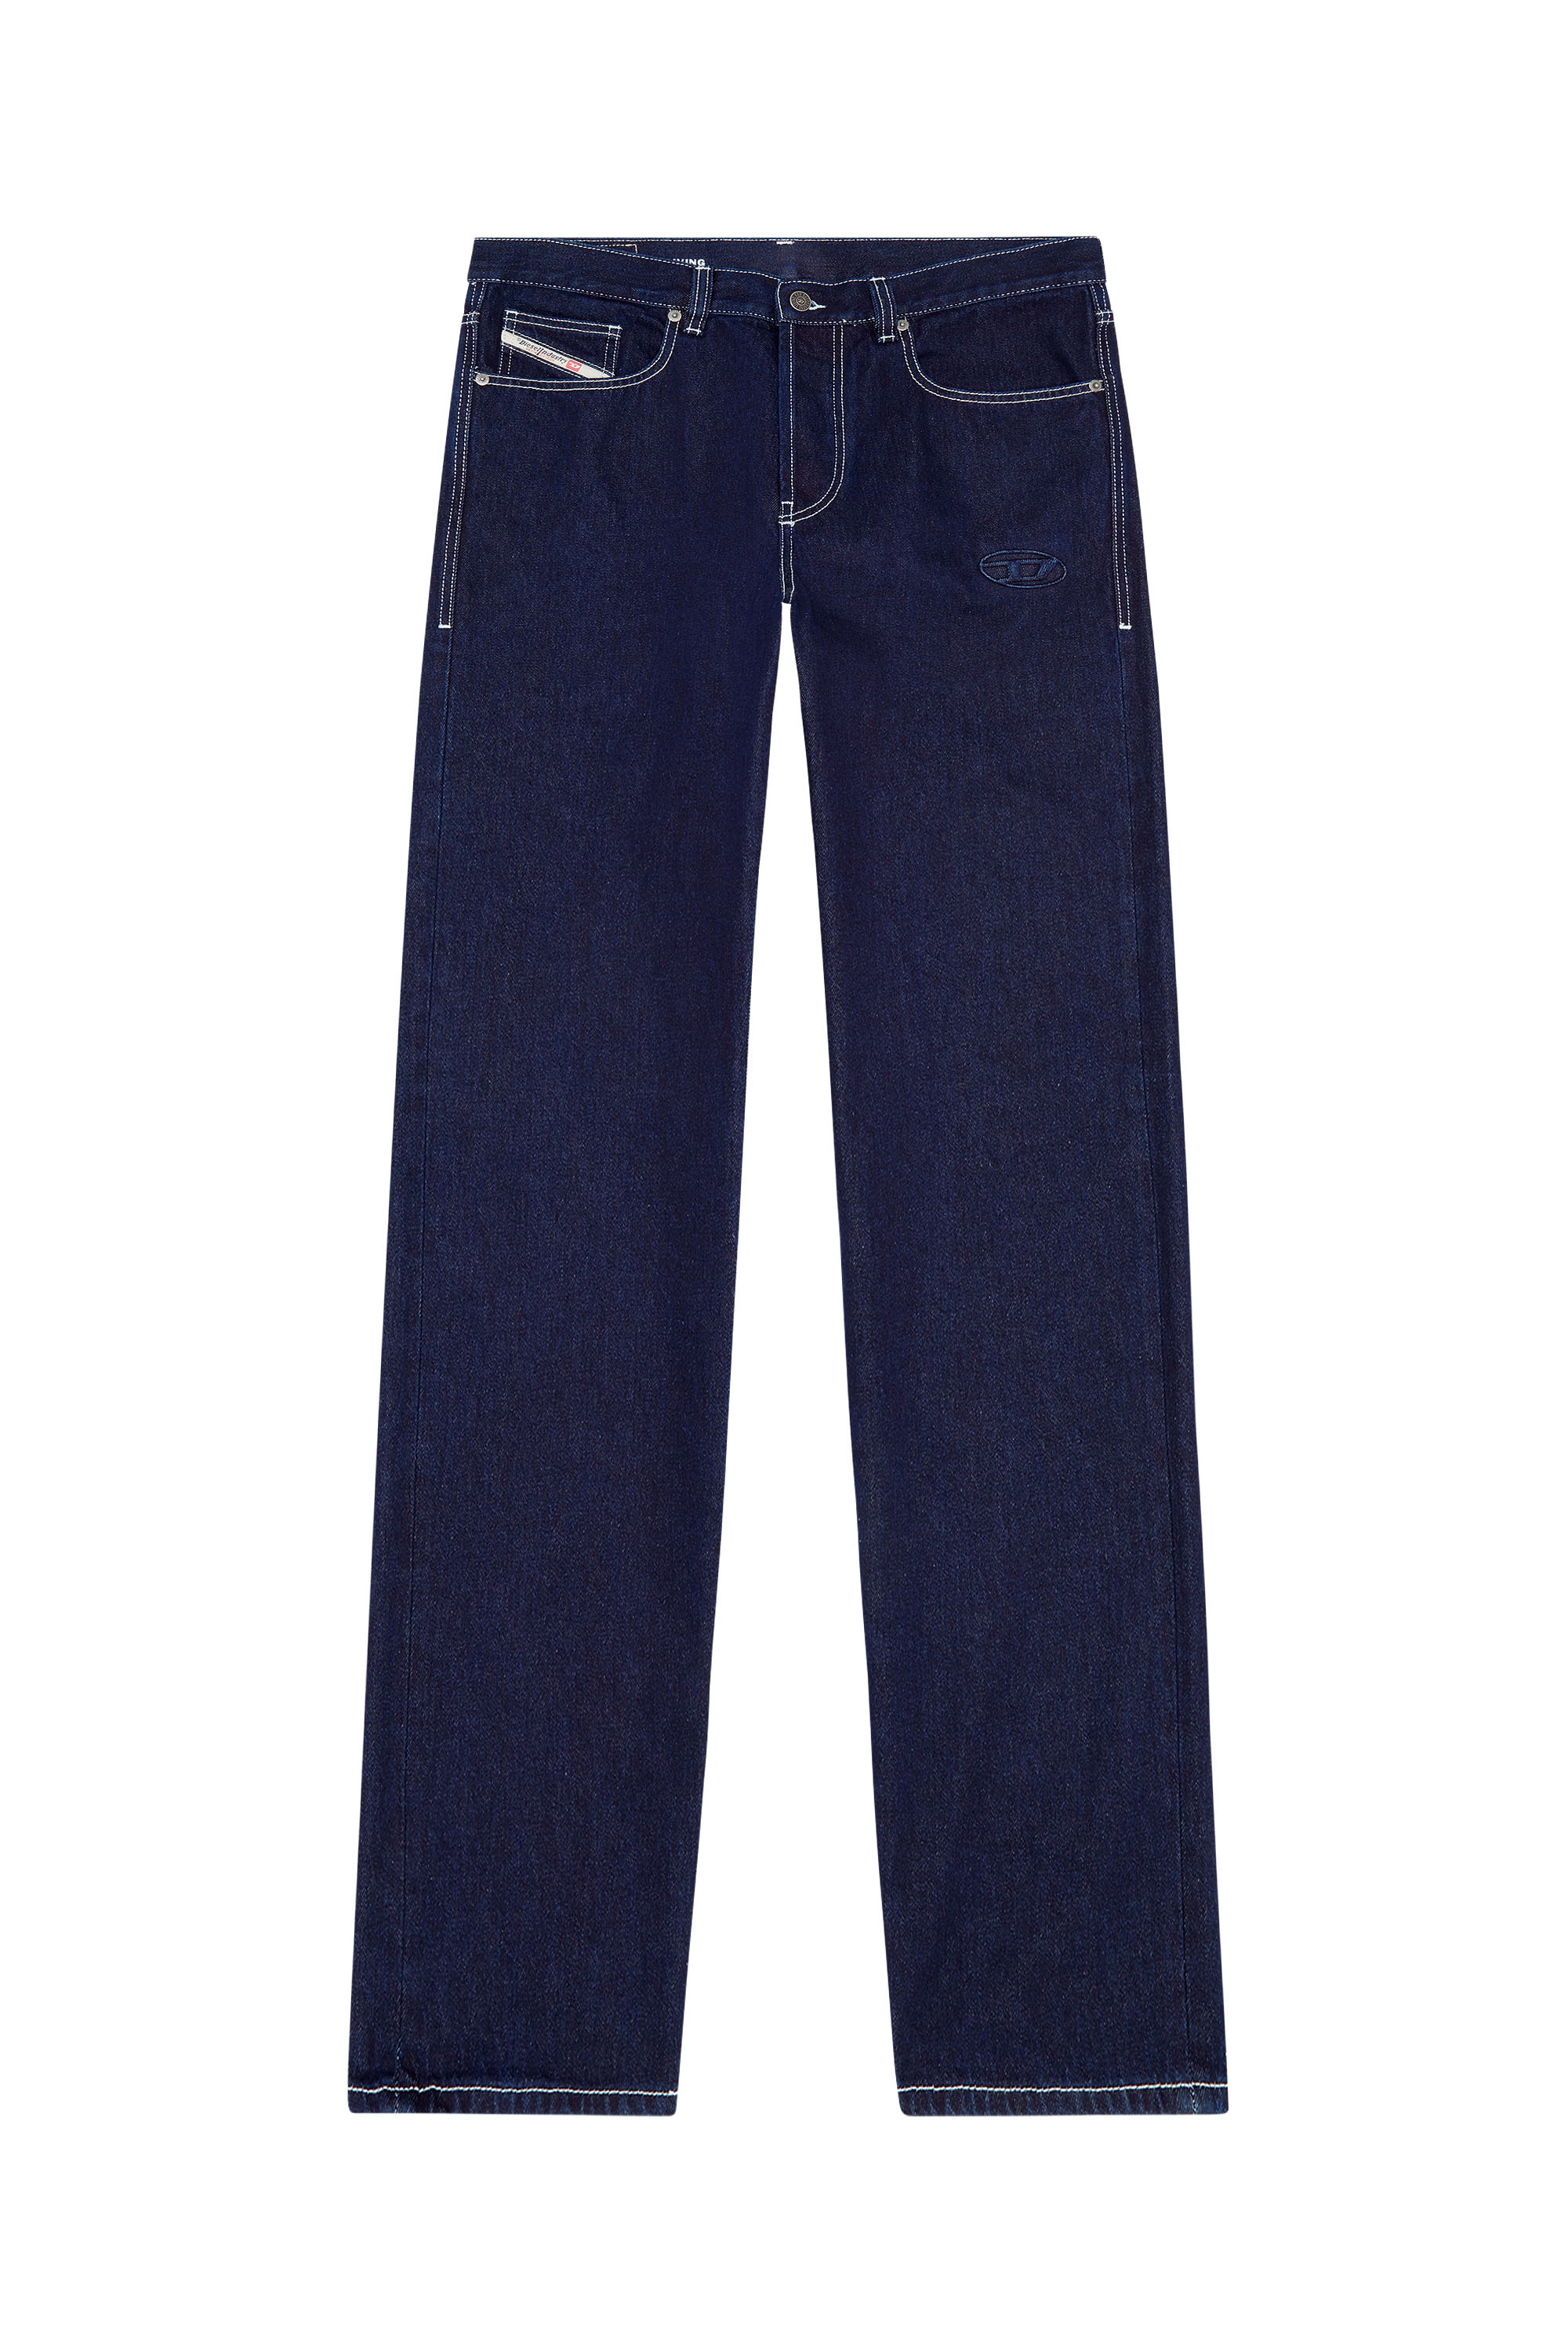 2010 D-Macs 09F19 Straight Jeans, Blu Scuro - Jeans